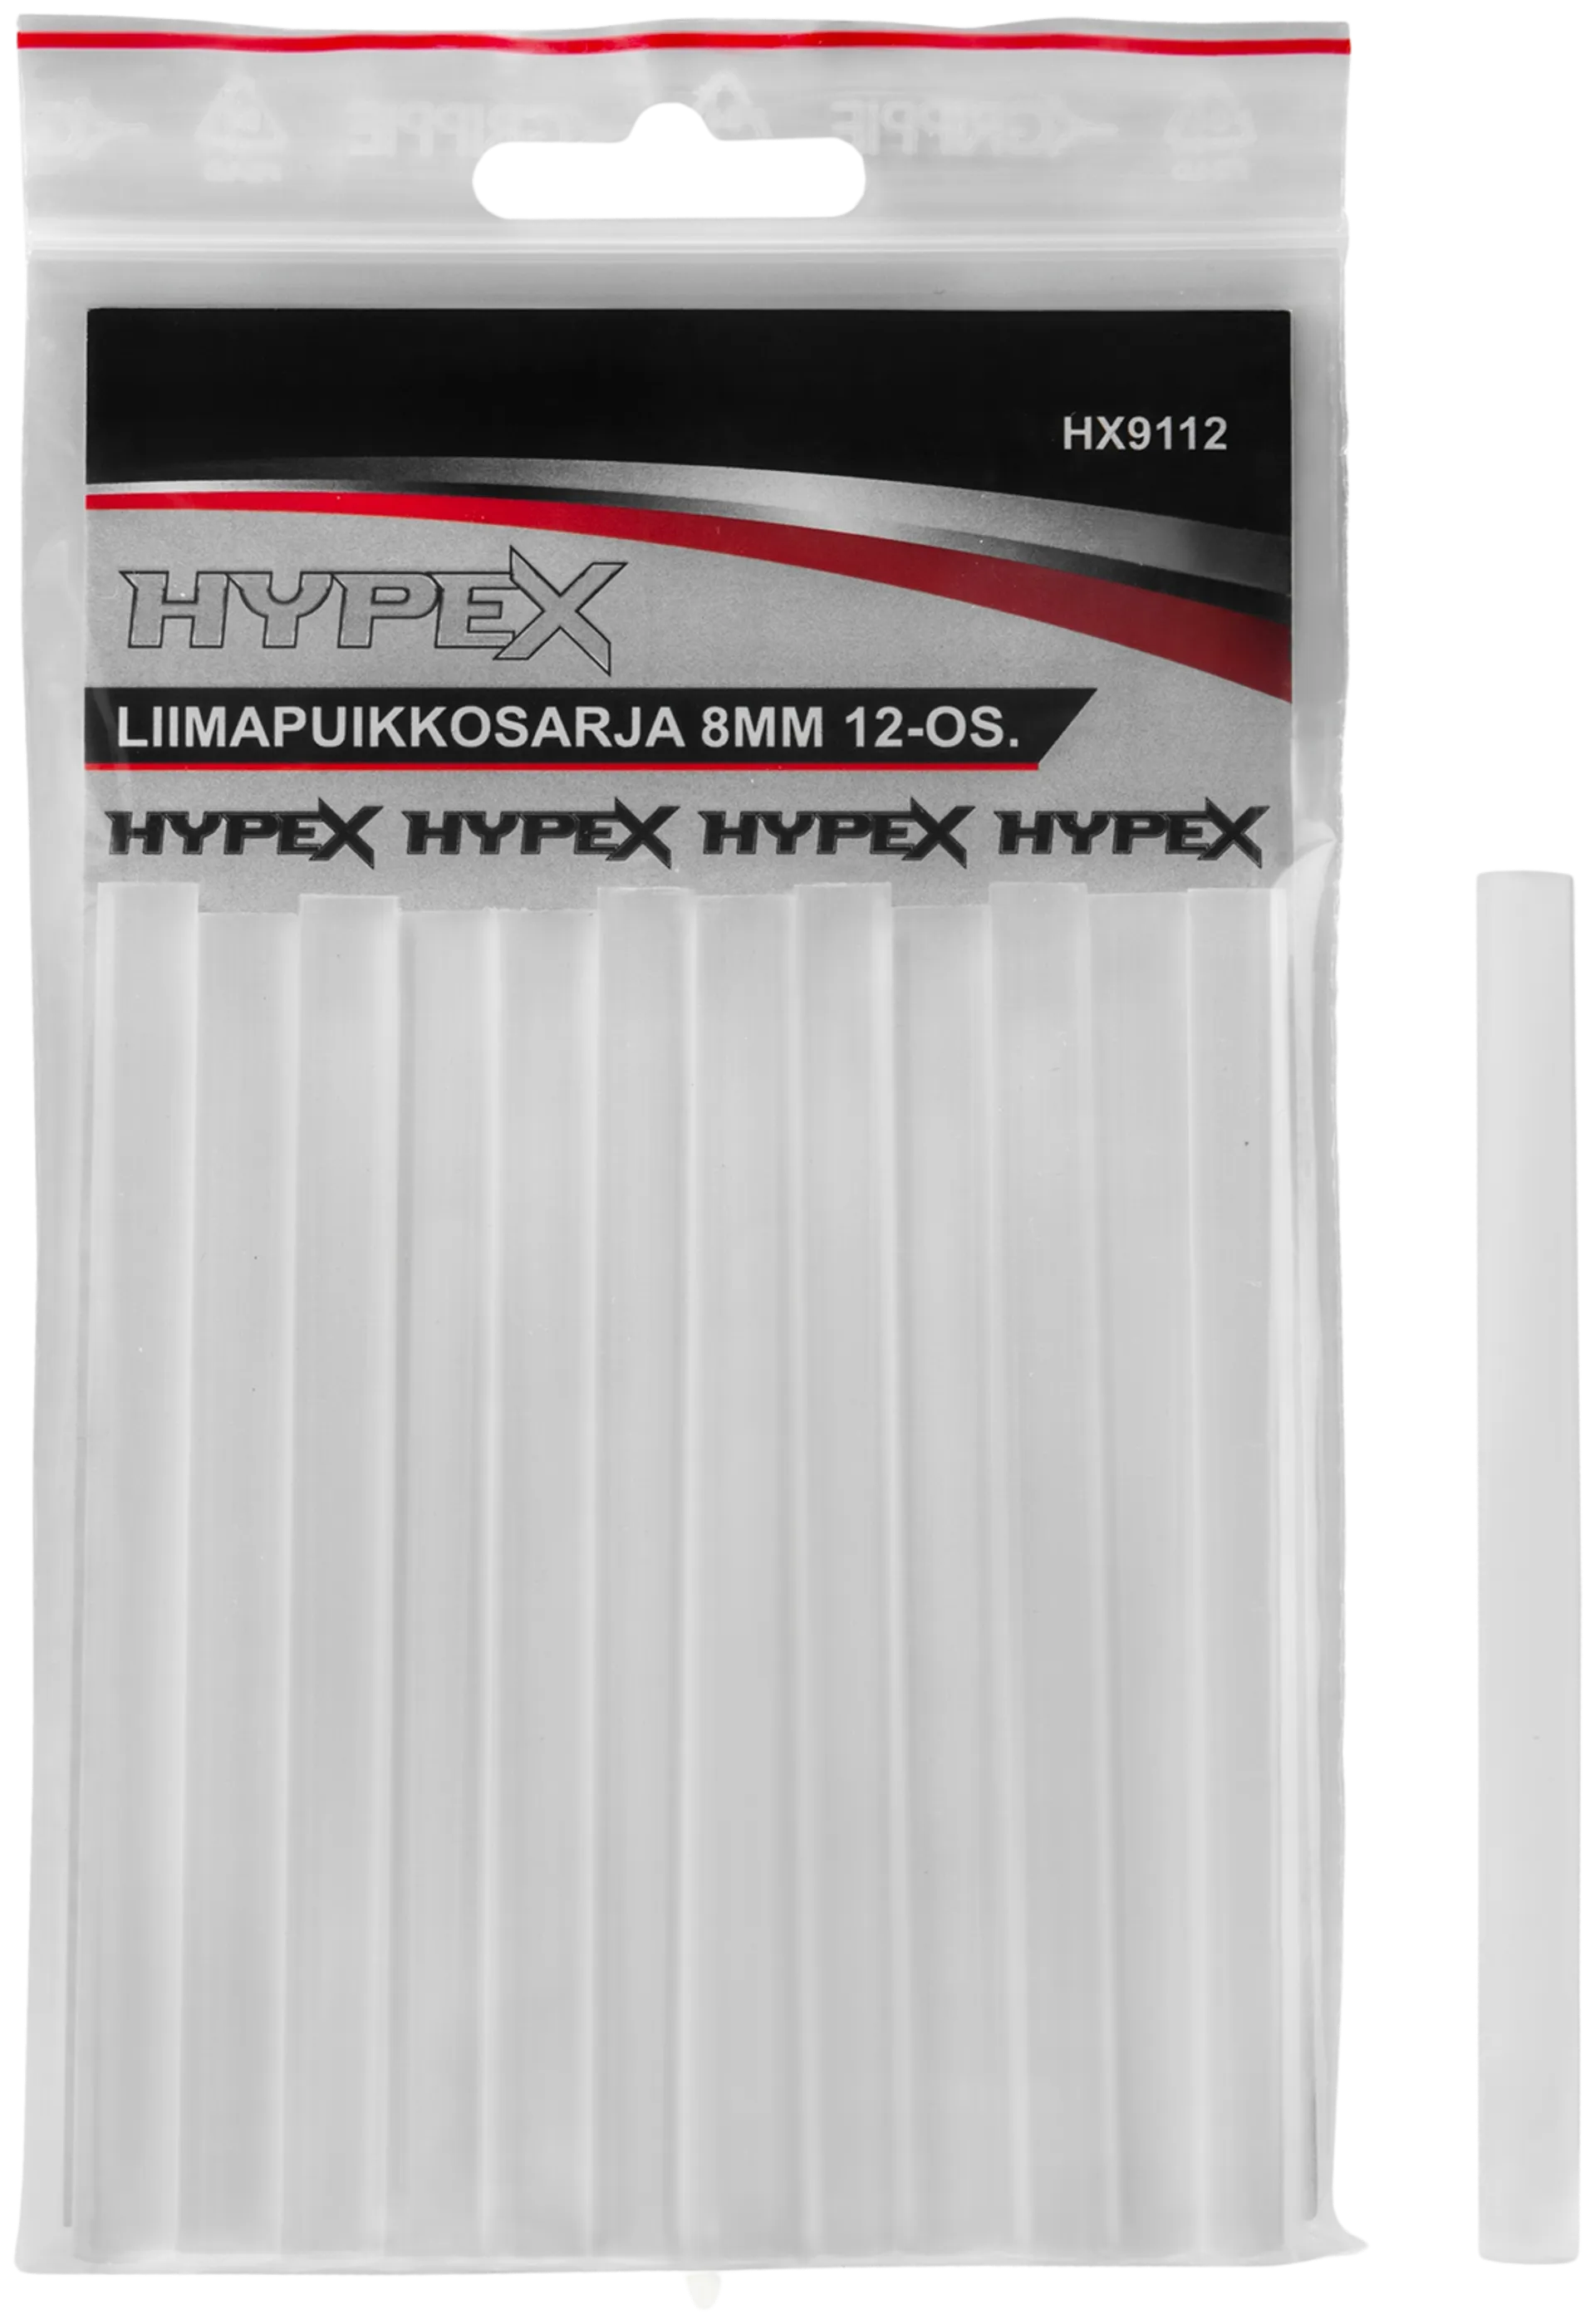 Hypex liimapuikkosarja 8mm 12-os.